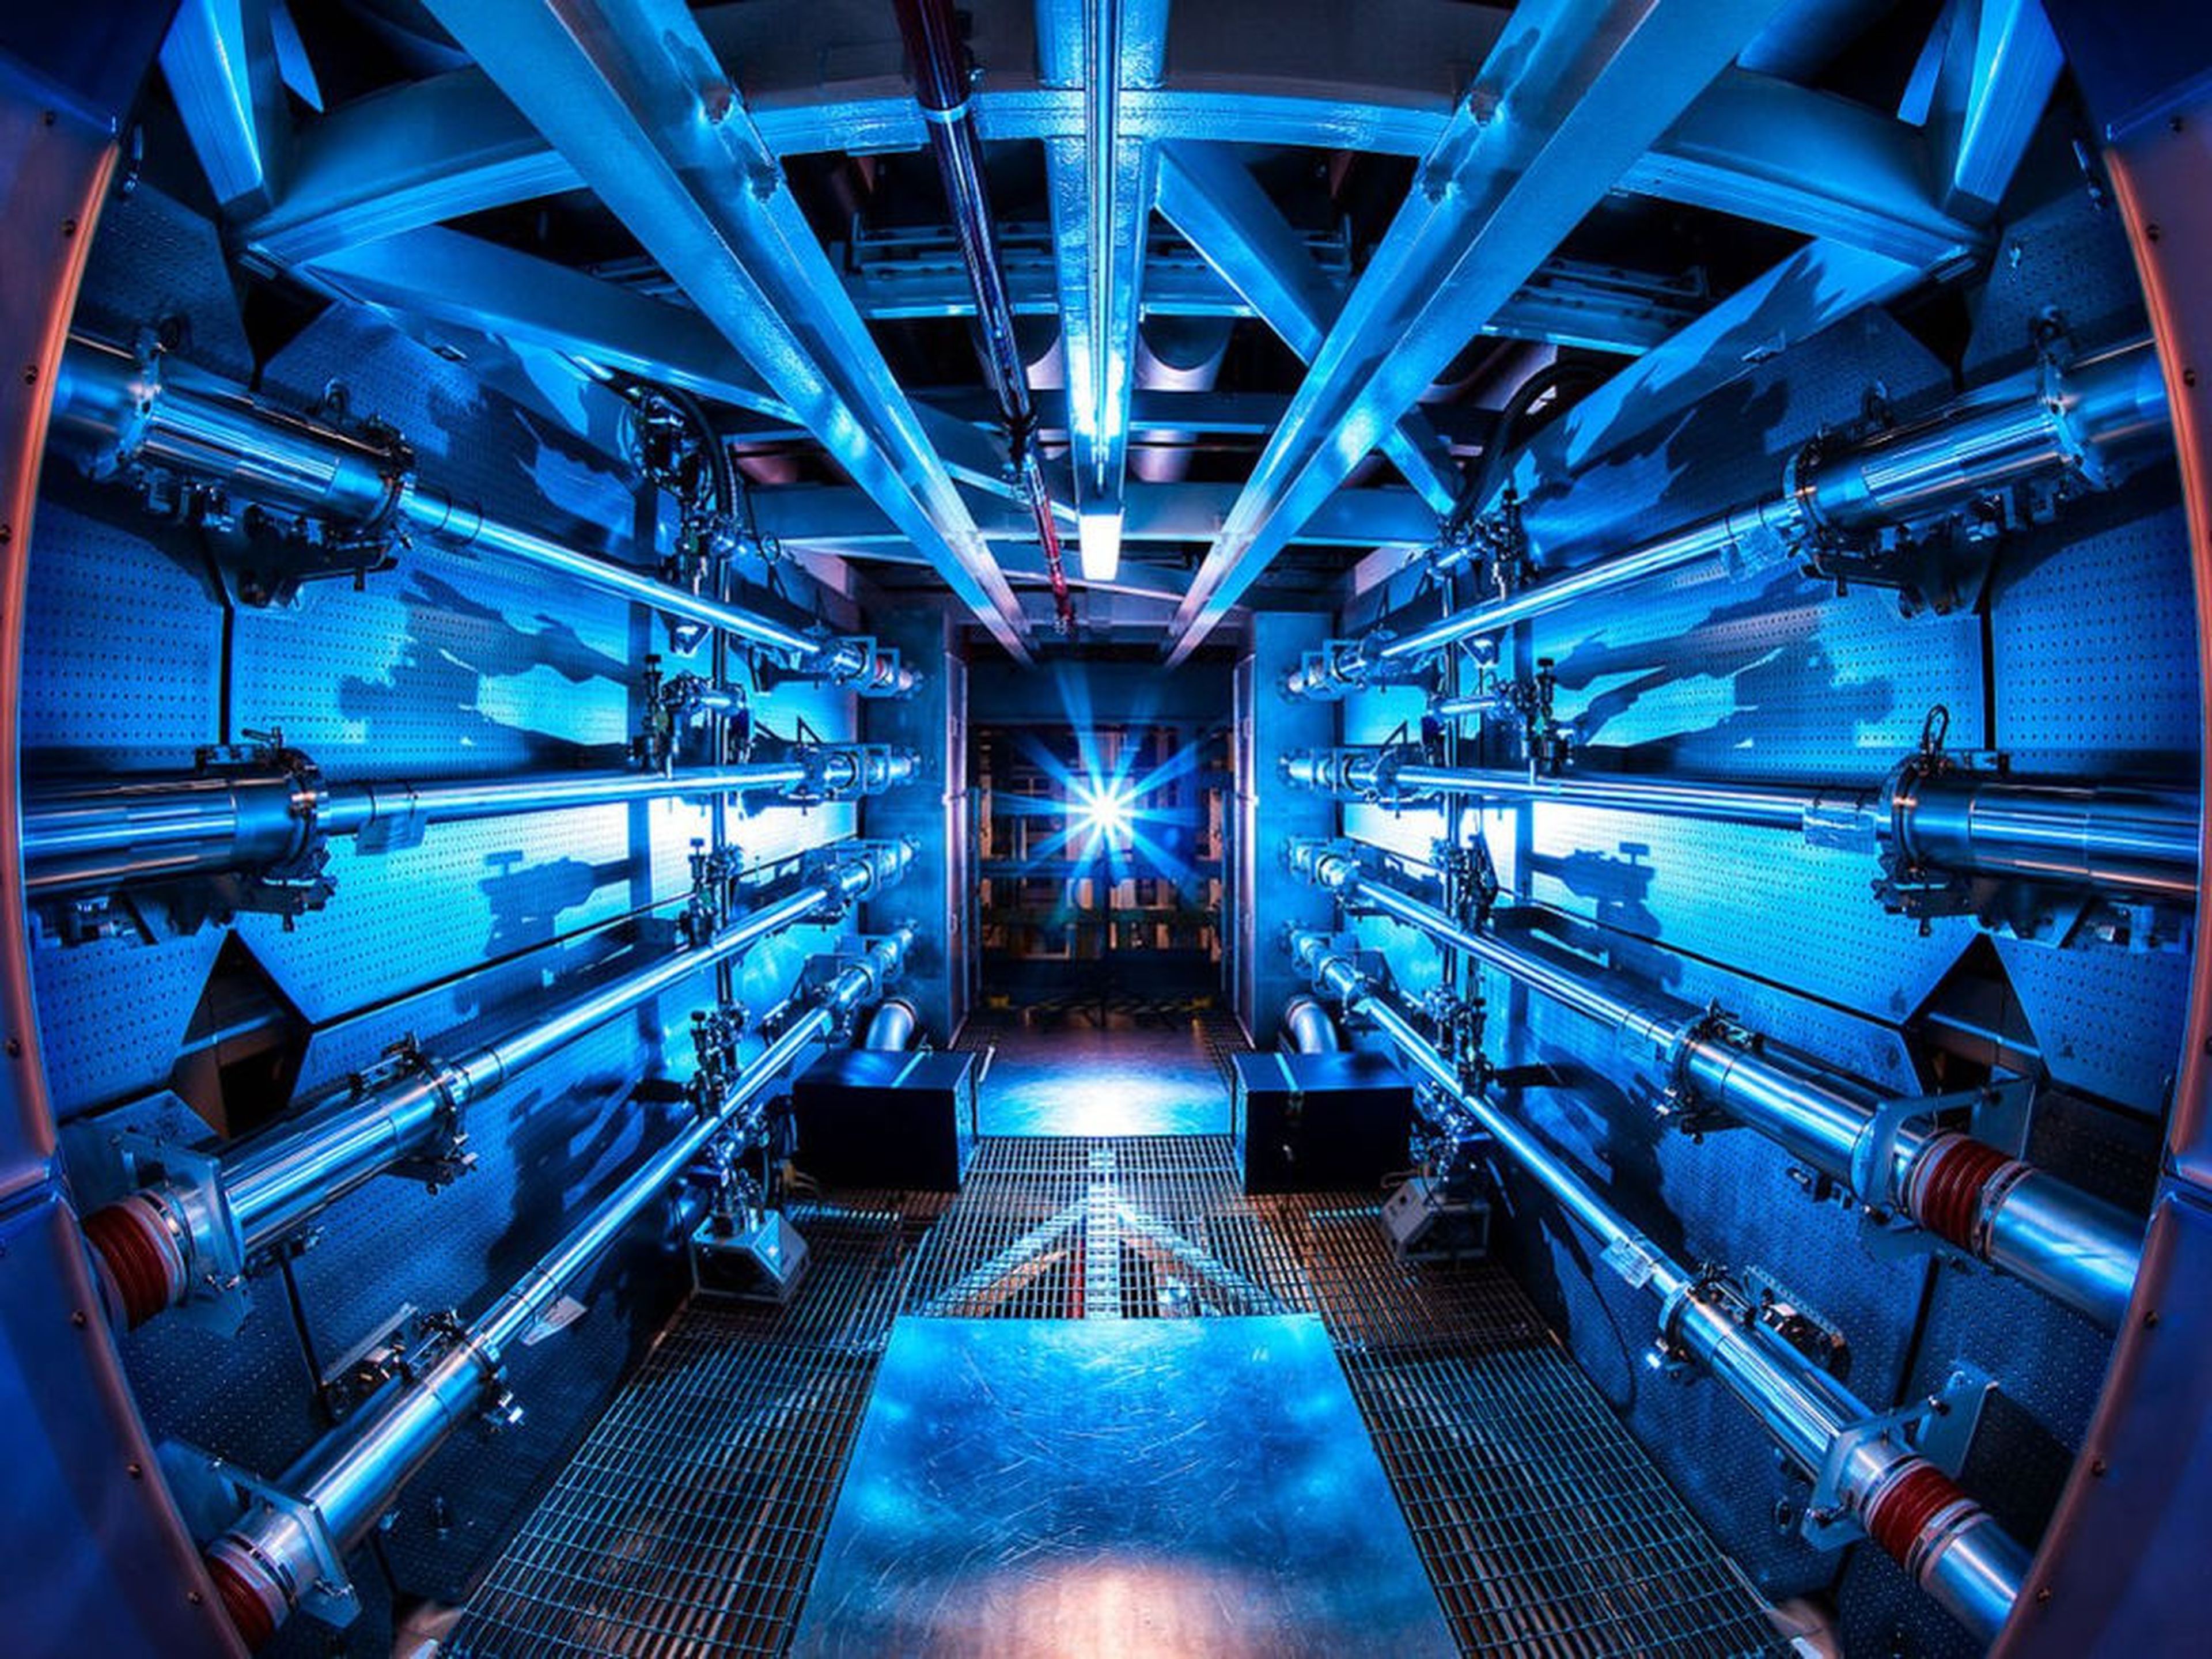 Si bien el reactor nuclear de Oswalt puede no estar a escala industrial, es una hazaña increíblemente impresionante para un niño de 12 años.